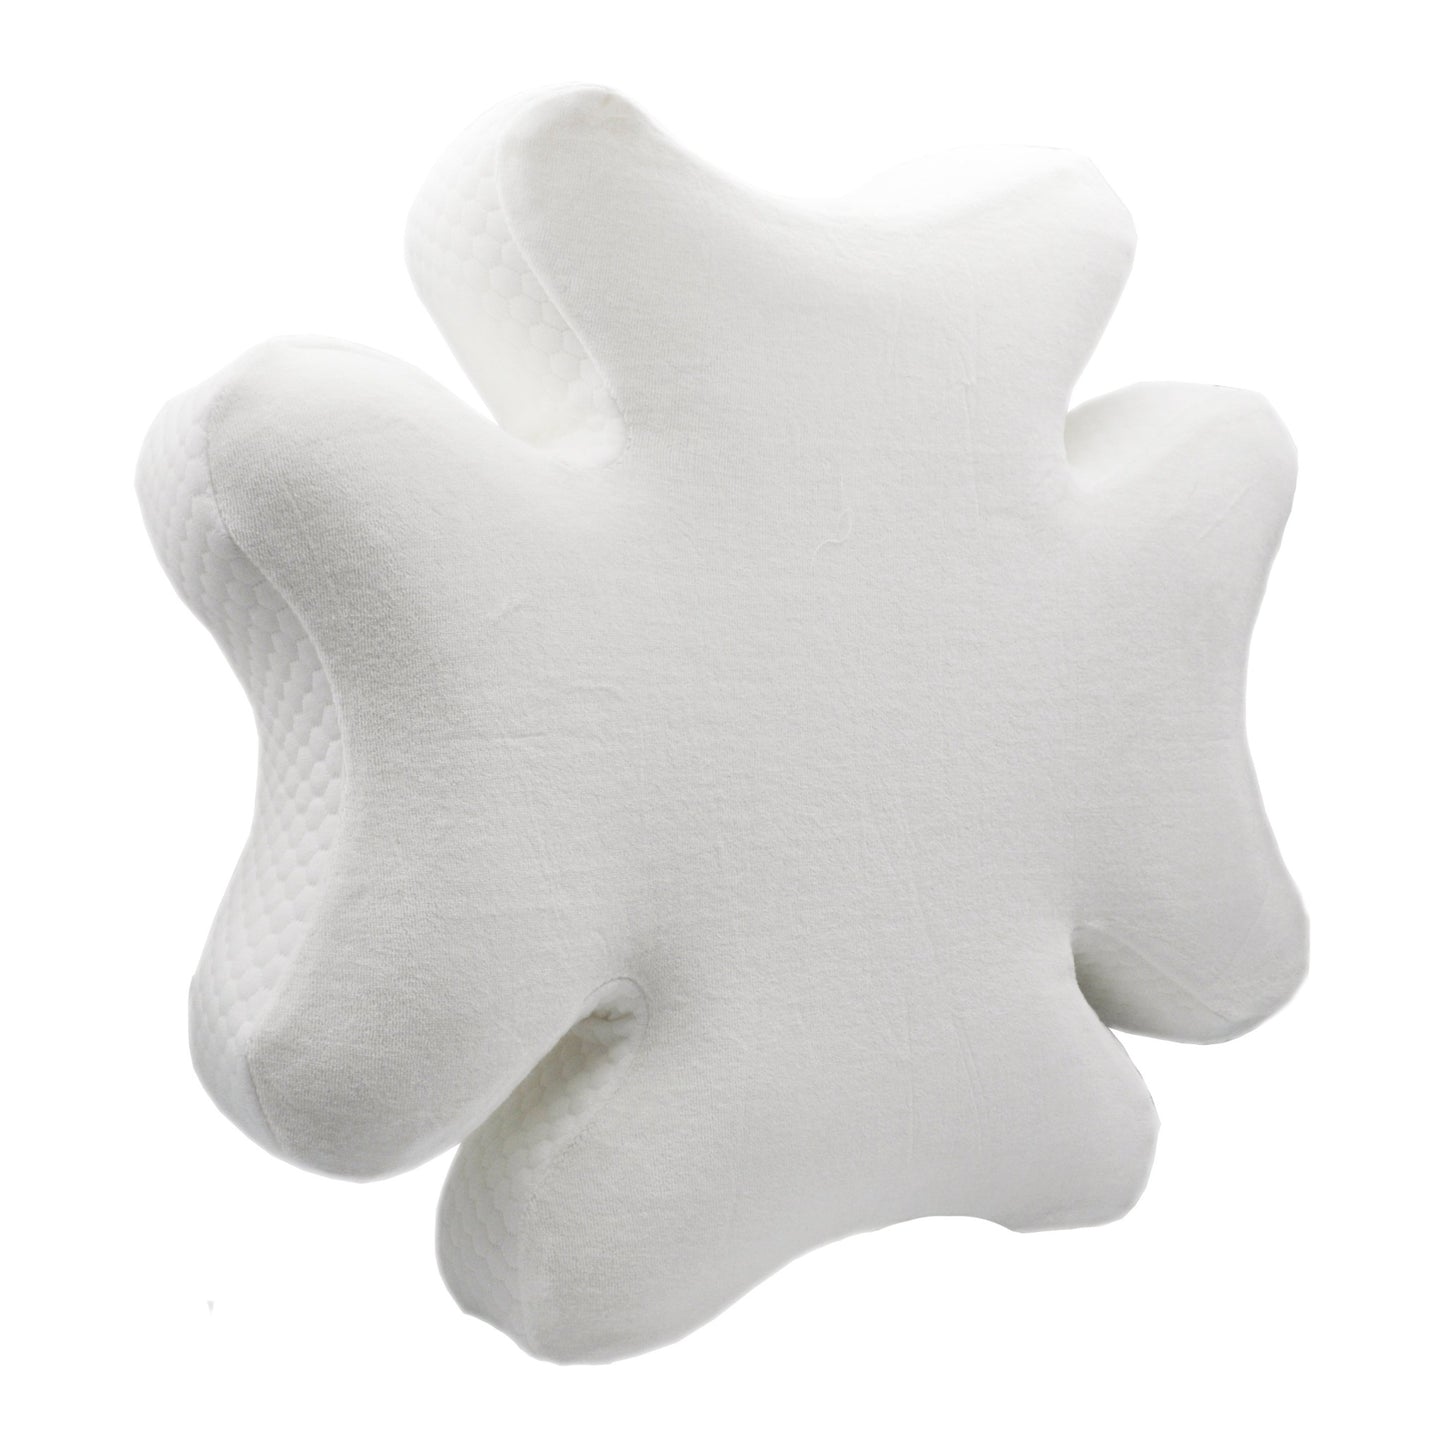 Snugell CPAP Pillow